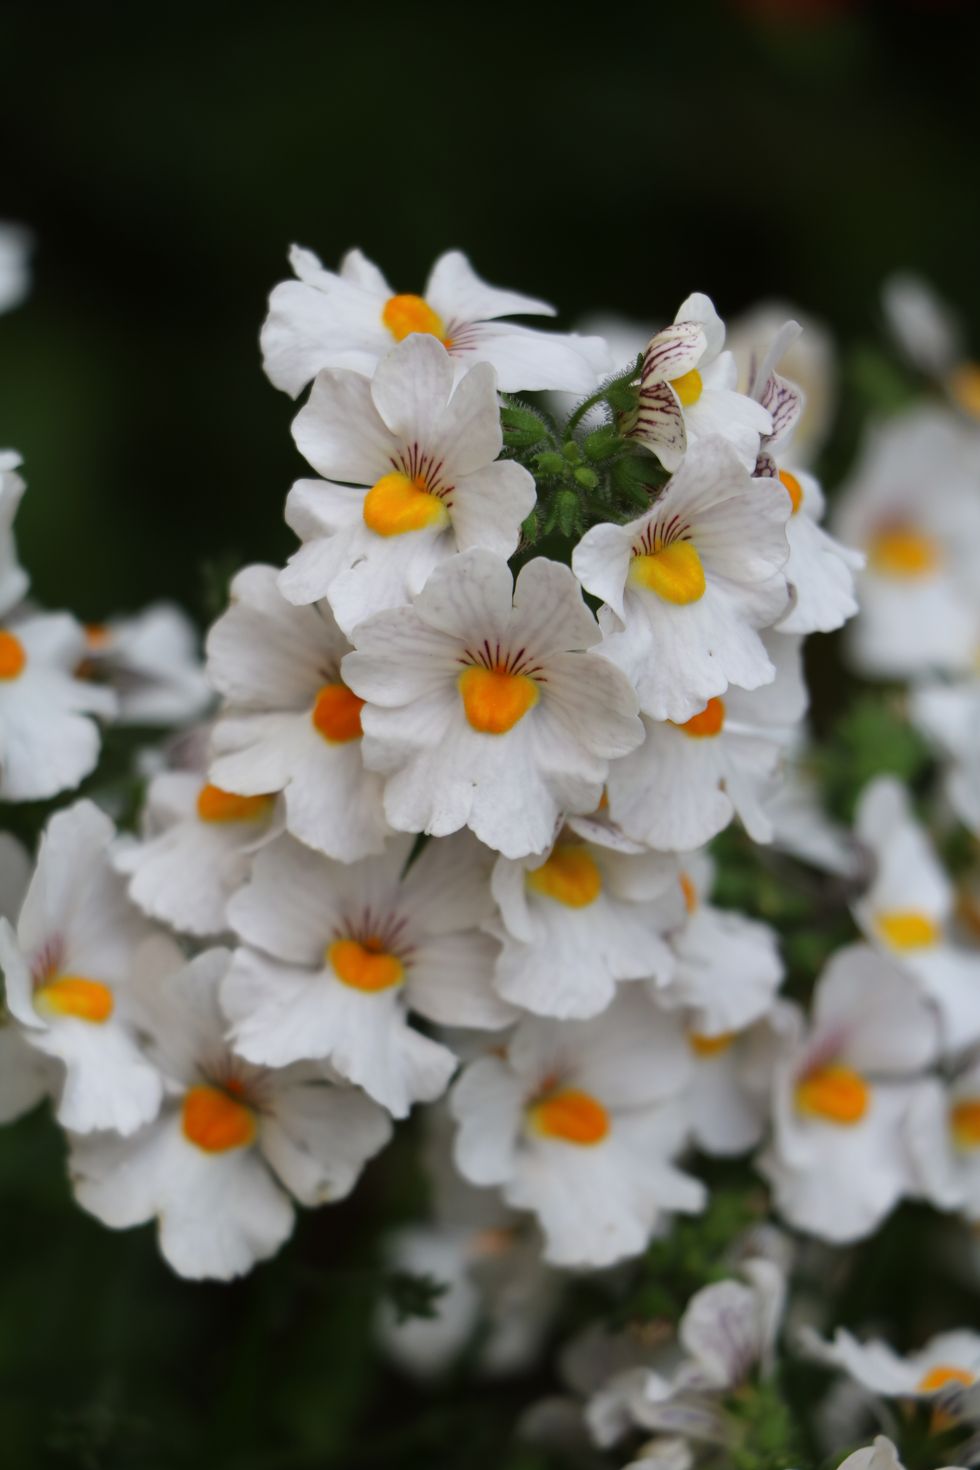 White Nemesia flowers